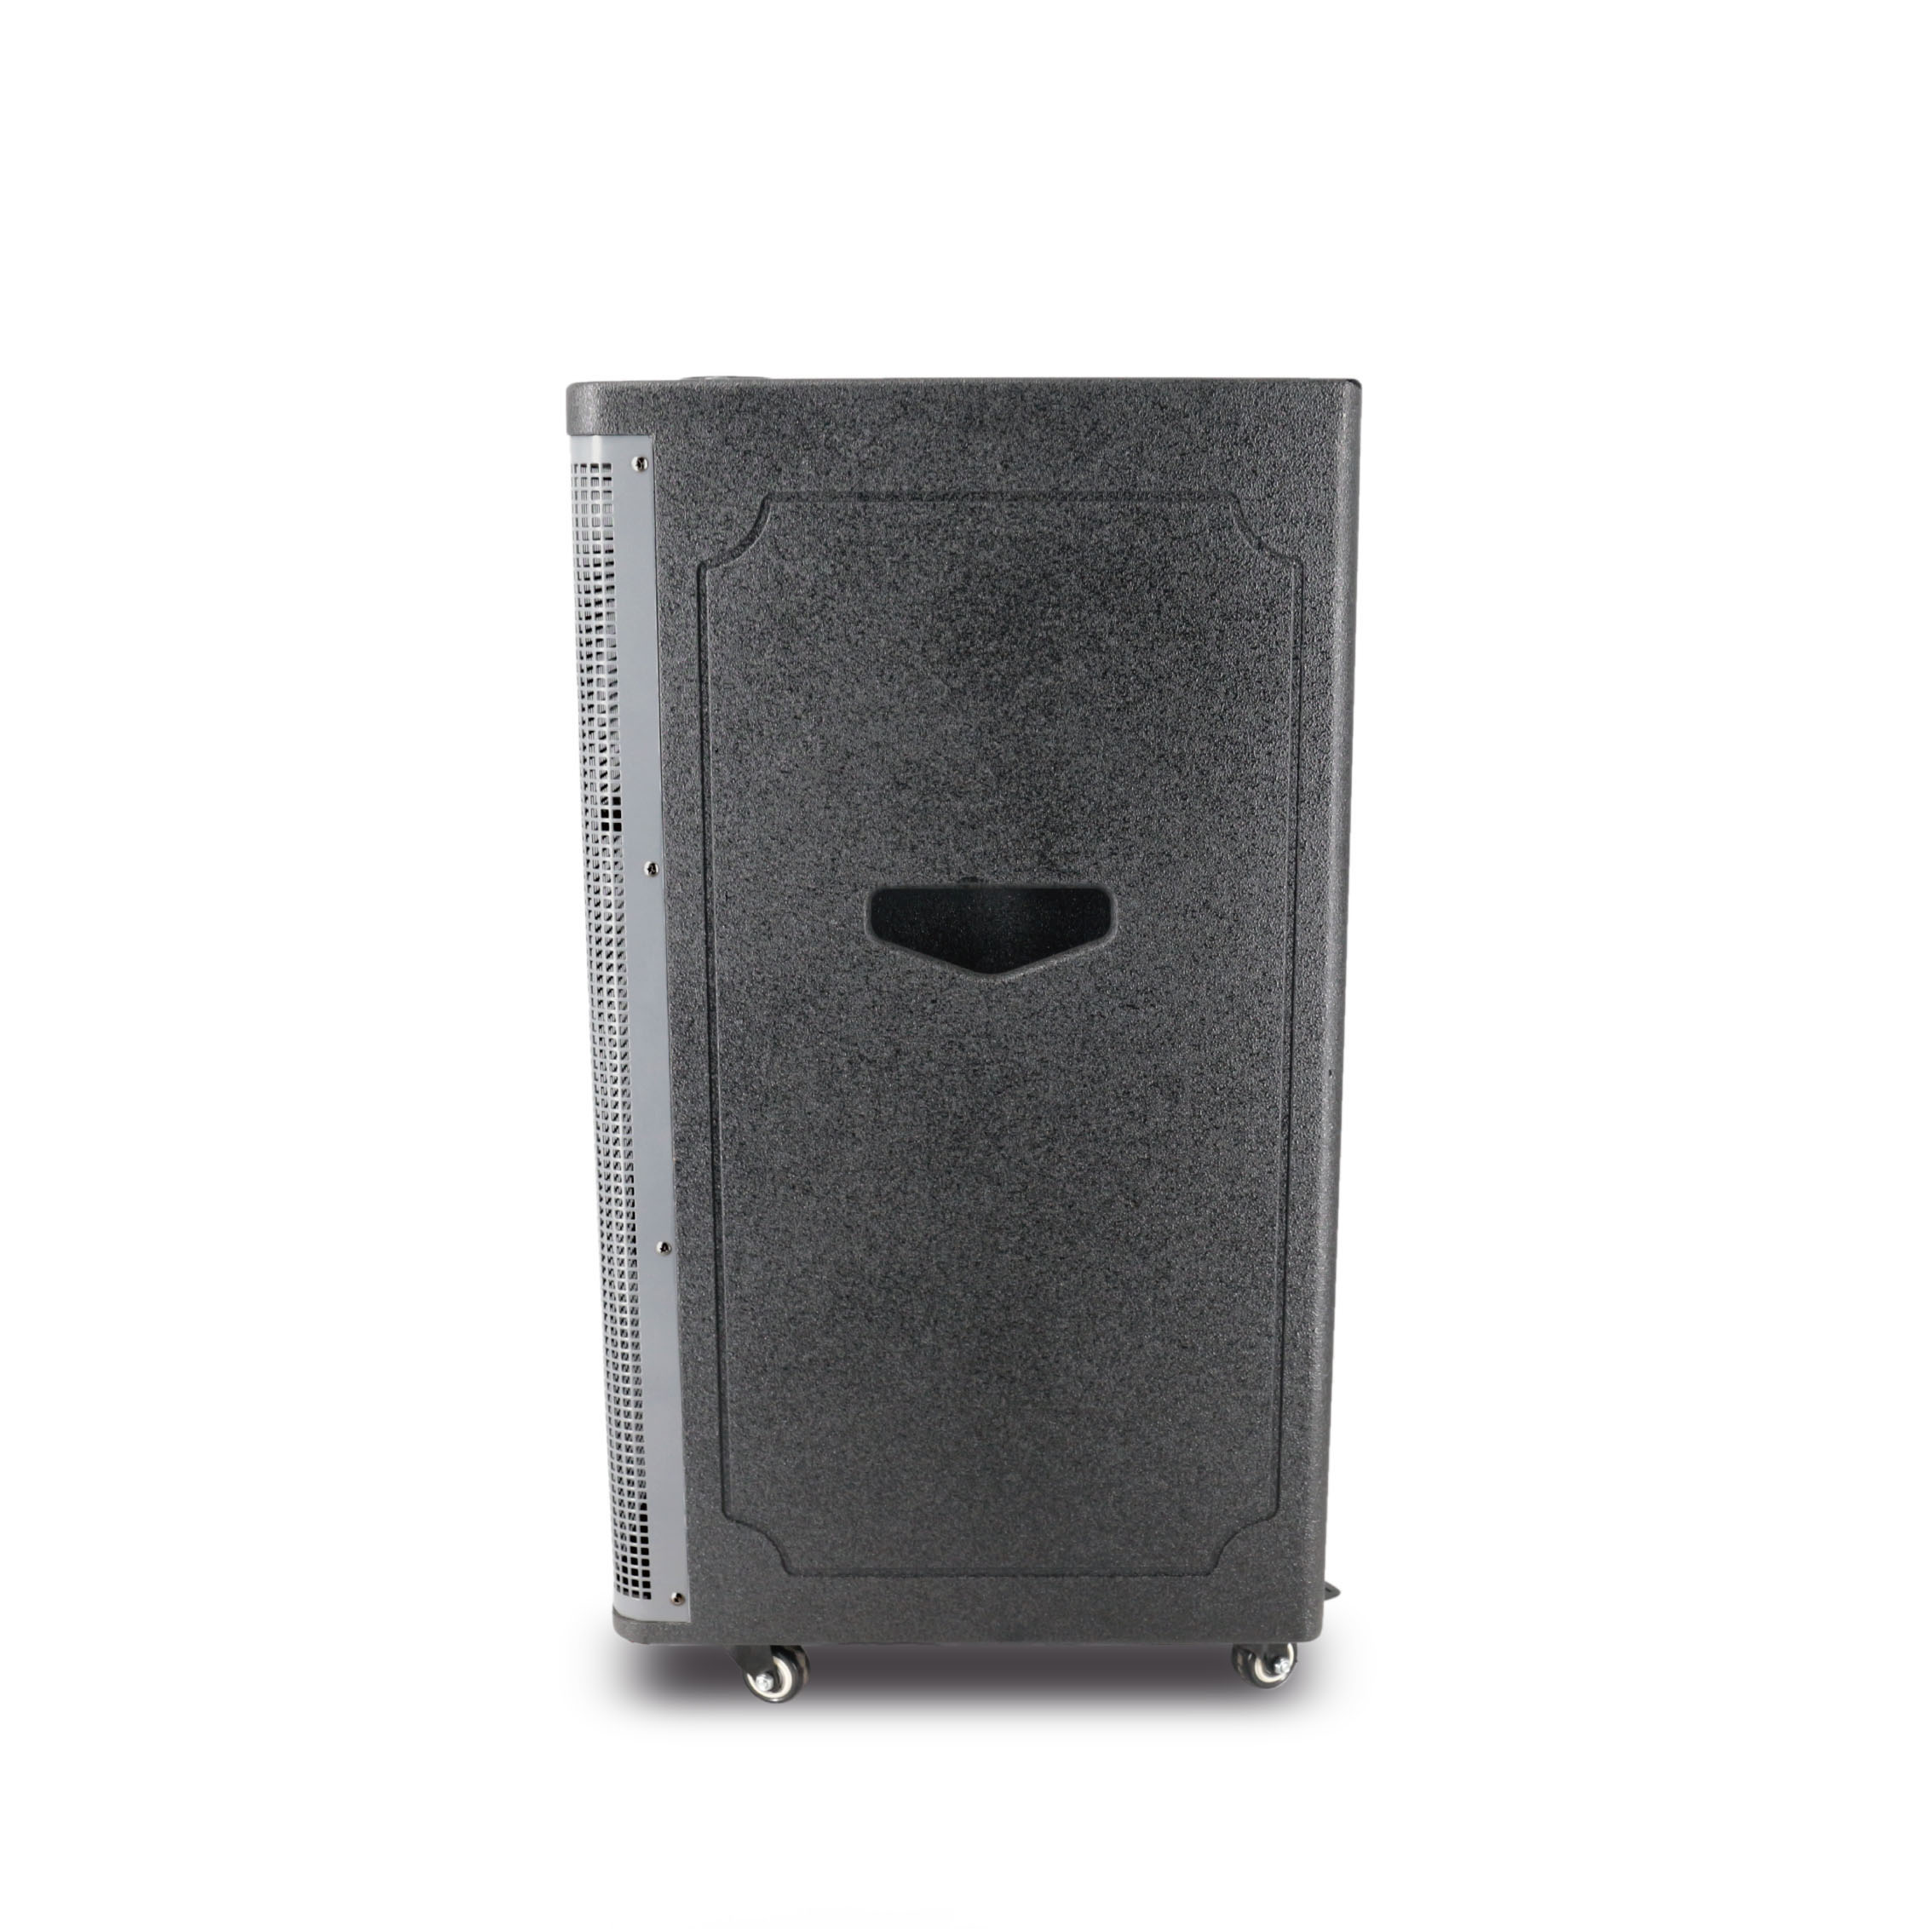 Gray Karaoke DJ Bass Portable Bt Wireless Trolly Speaker